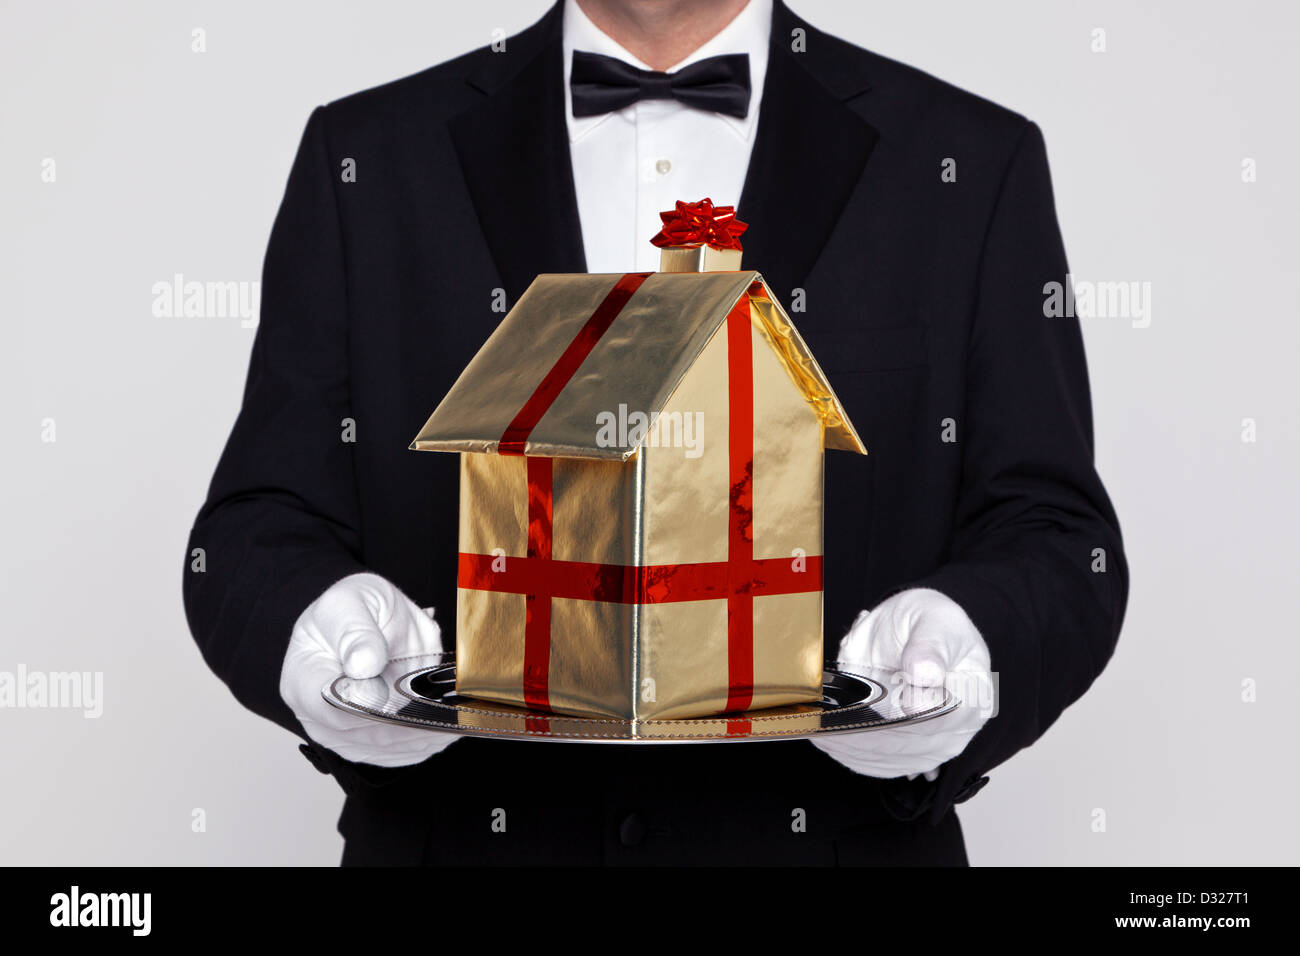 Butler holding a gift wrapped création de modèle sur un plateau d'argent Banque D'Images